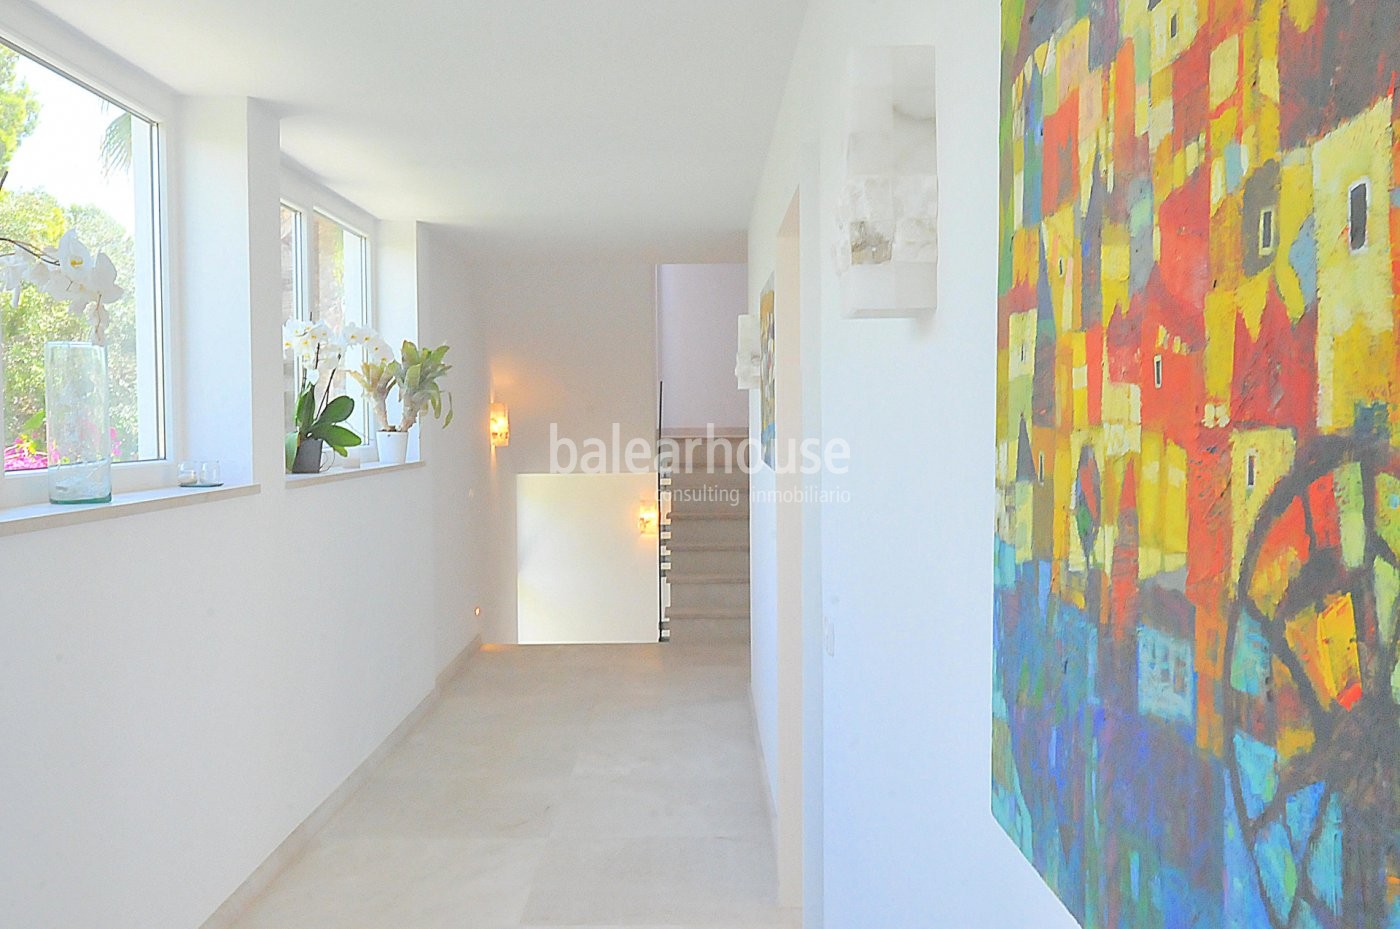 Villa de diseño moderno abierta al paisaje en la tranquila zona residencial de Sol de Mallorca